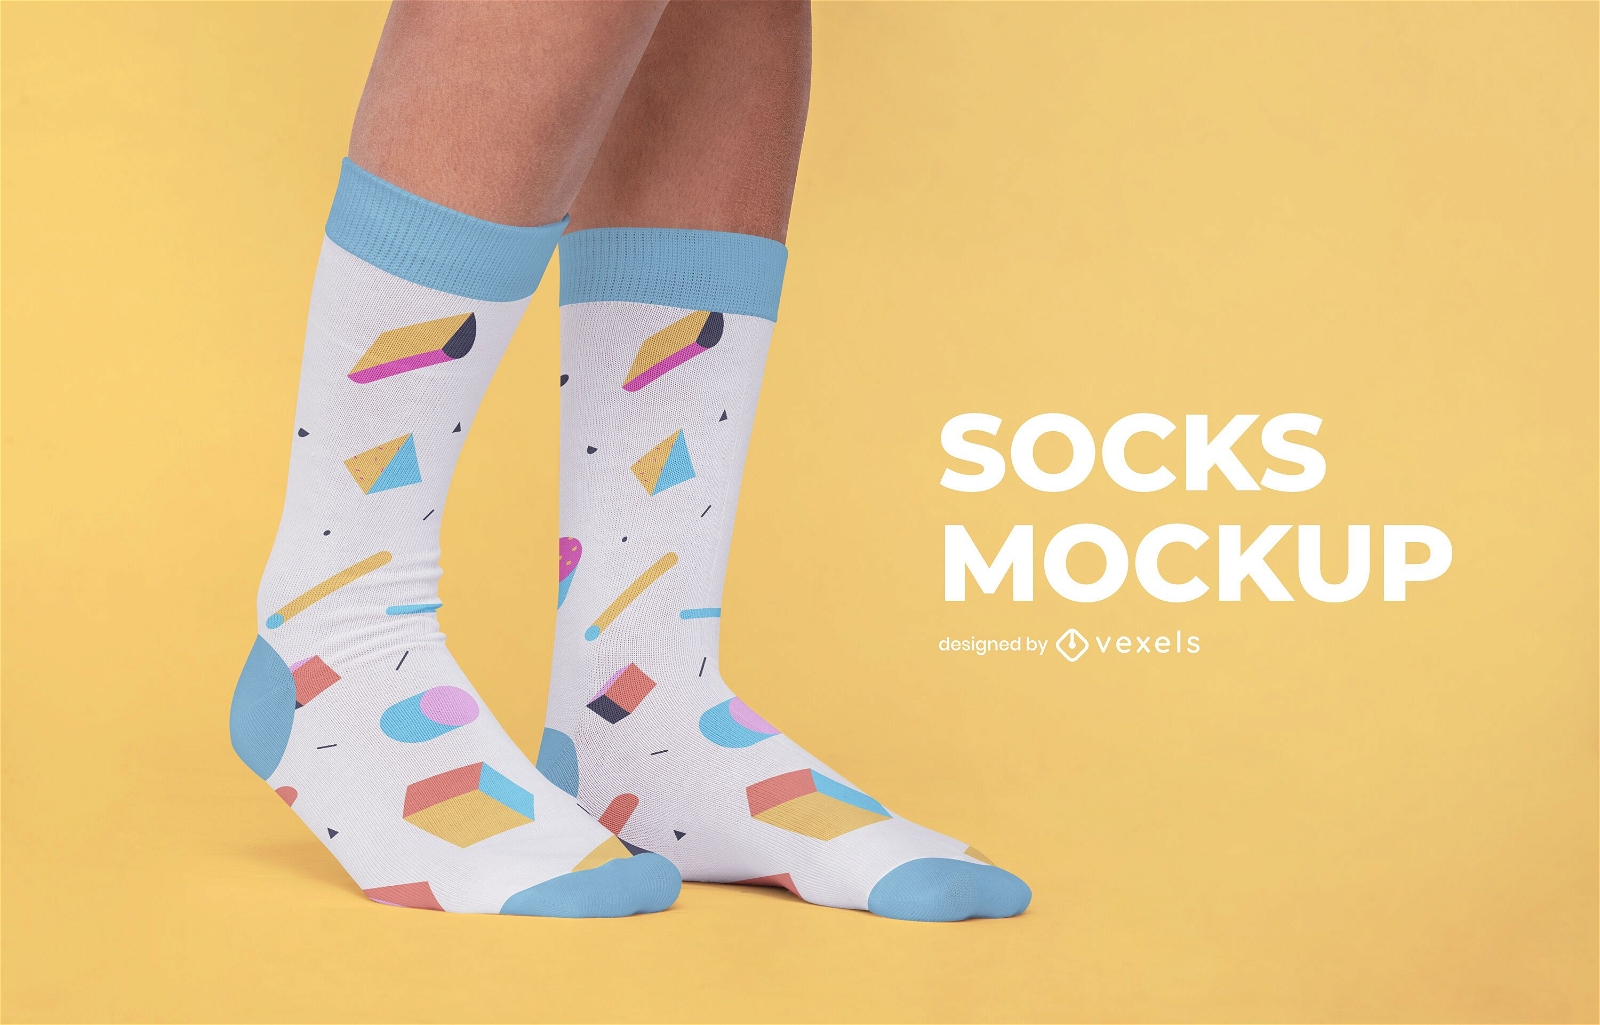 Socks pattern mockup design